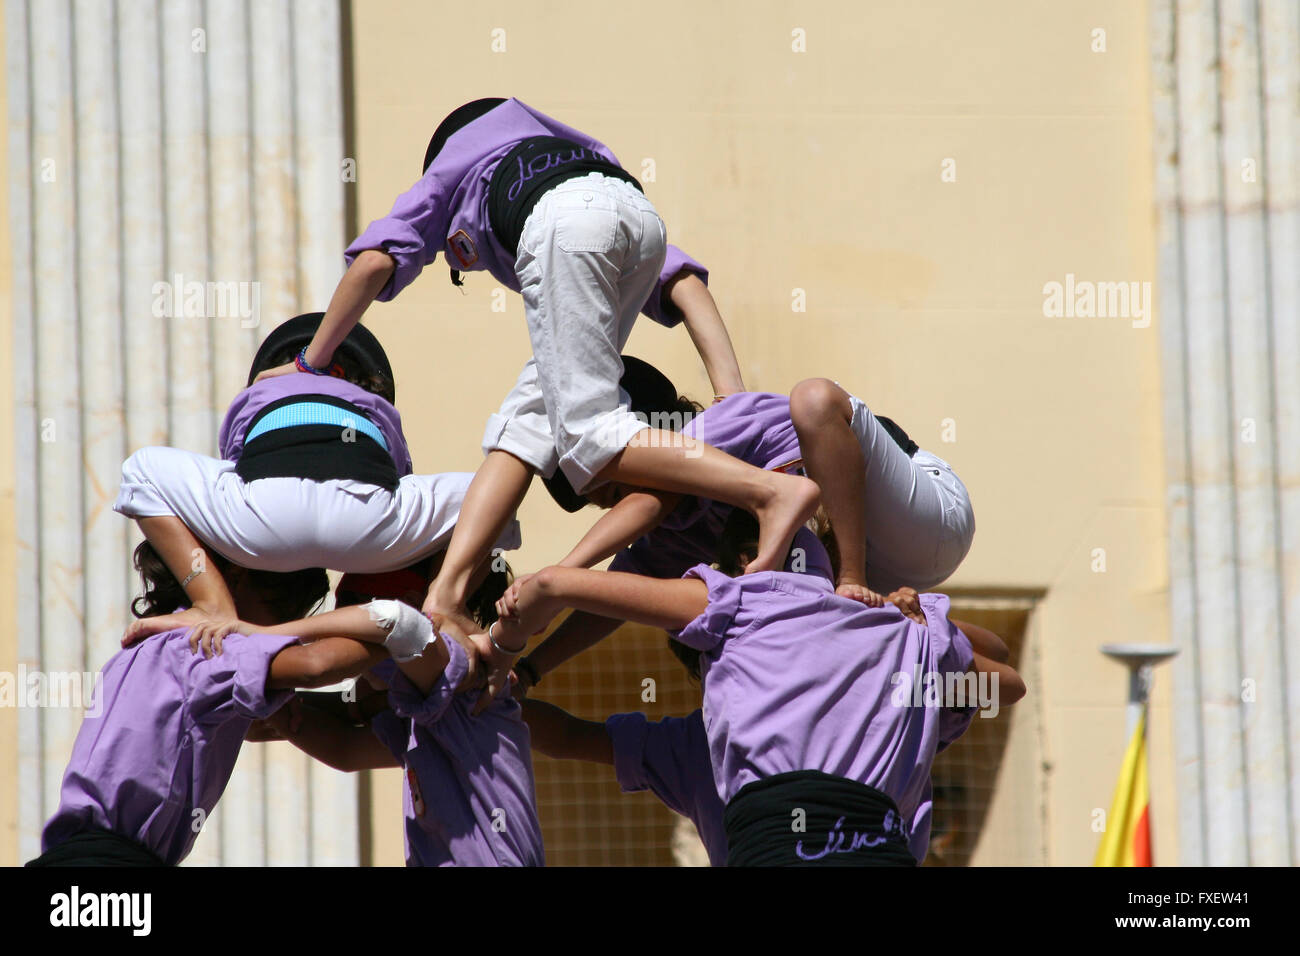 Les gens faire des droits de l'homme des tours, un spectacle traditionnel en Catalogne appelé "castellers" Banque D'Images